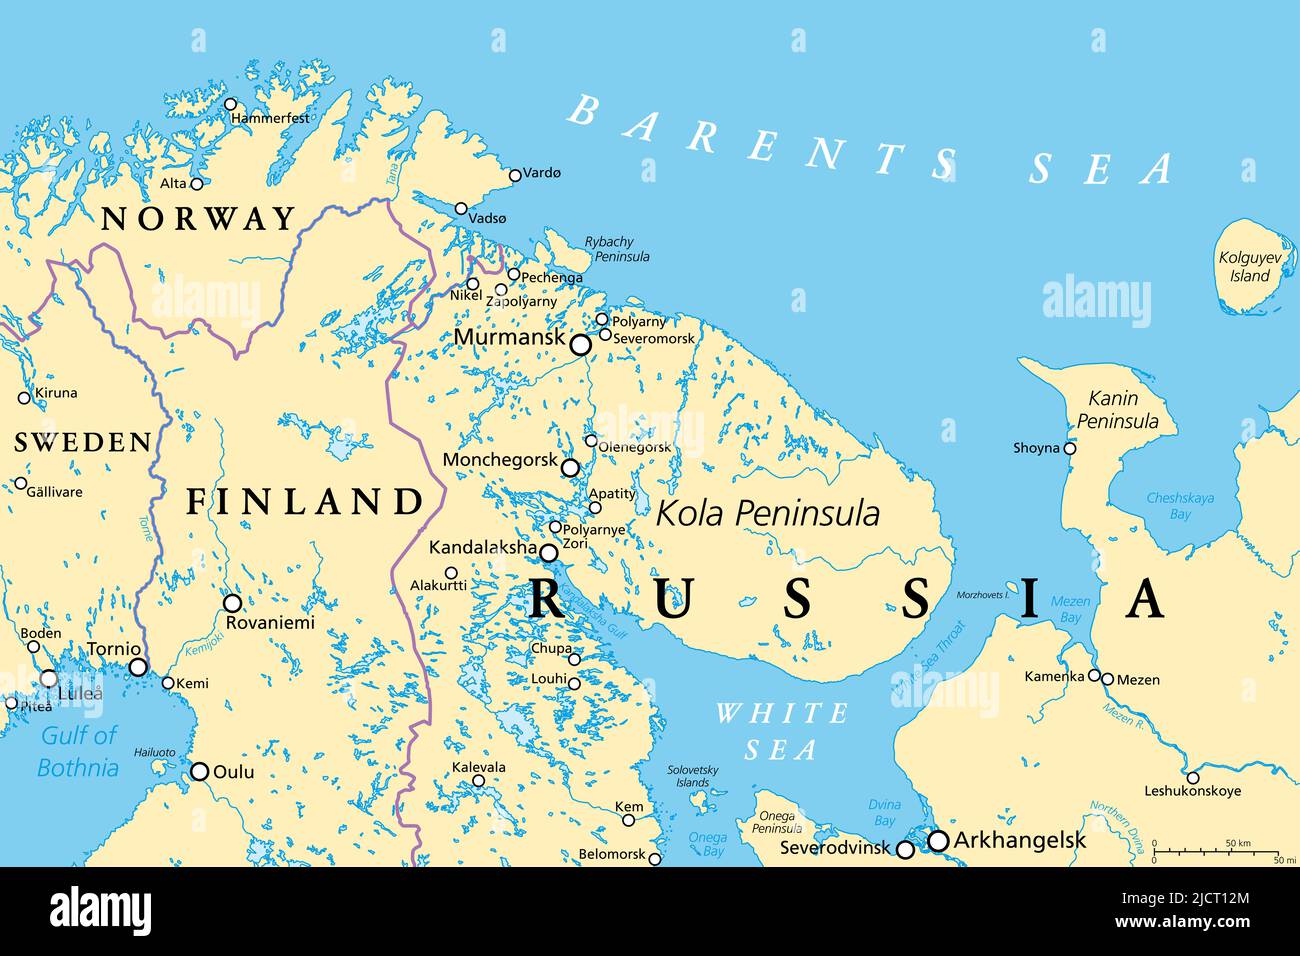 Oblast de Mourmansk et péninsule de Kola, carte politique. Sujet fédéral de la Russie, une partie de la Laponie, bordant la Norvège et la Finlande. Banque D'Images